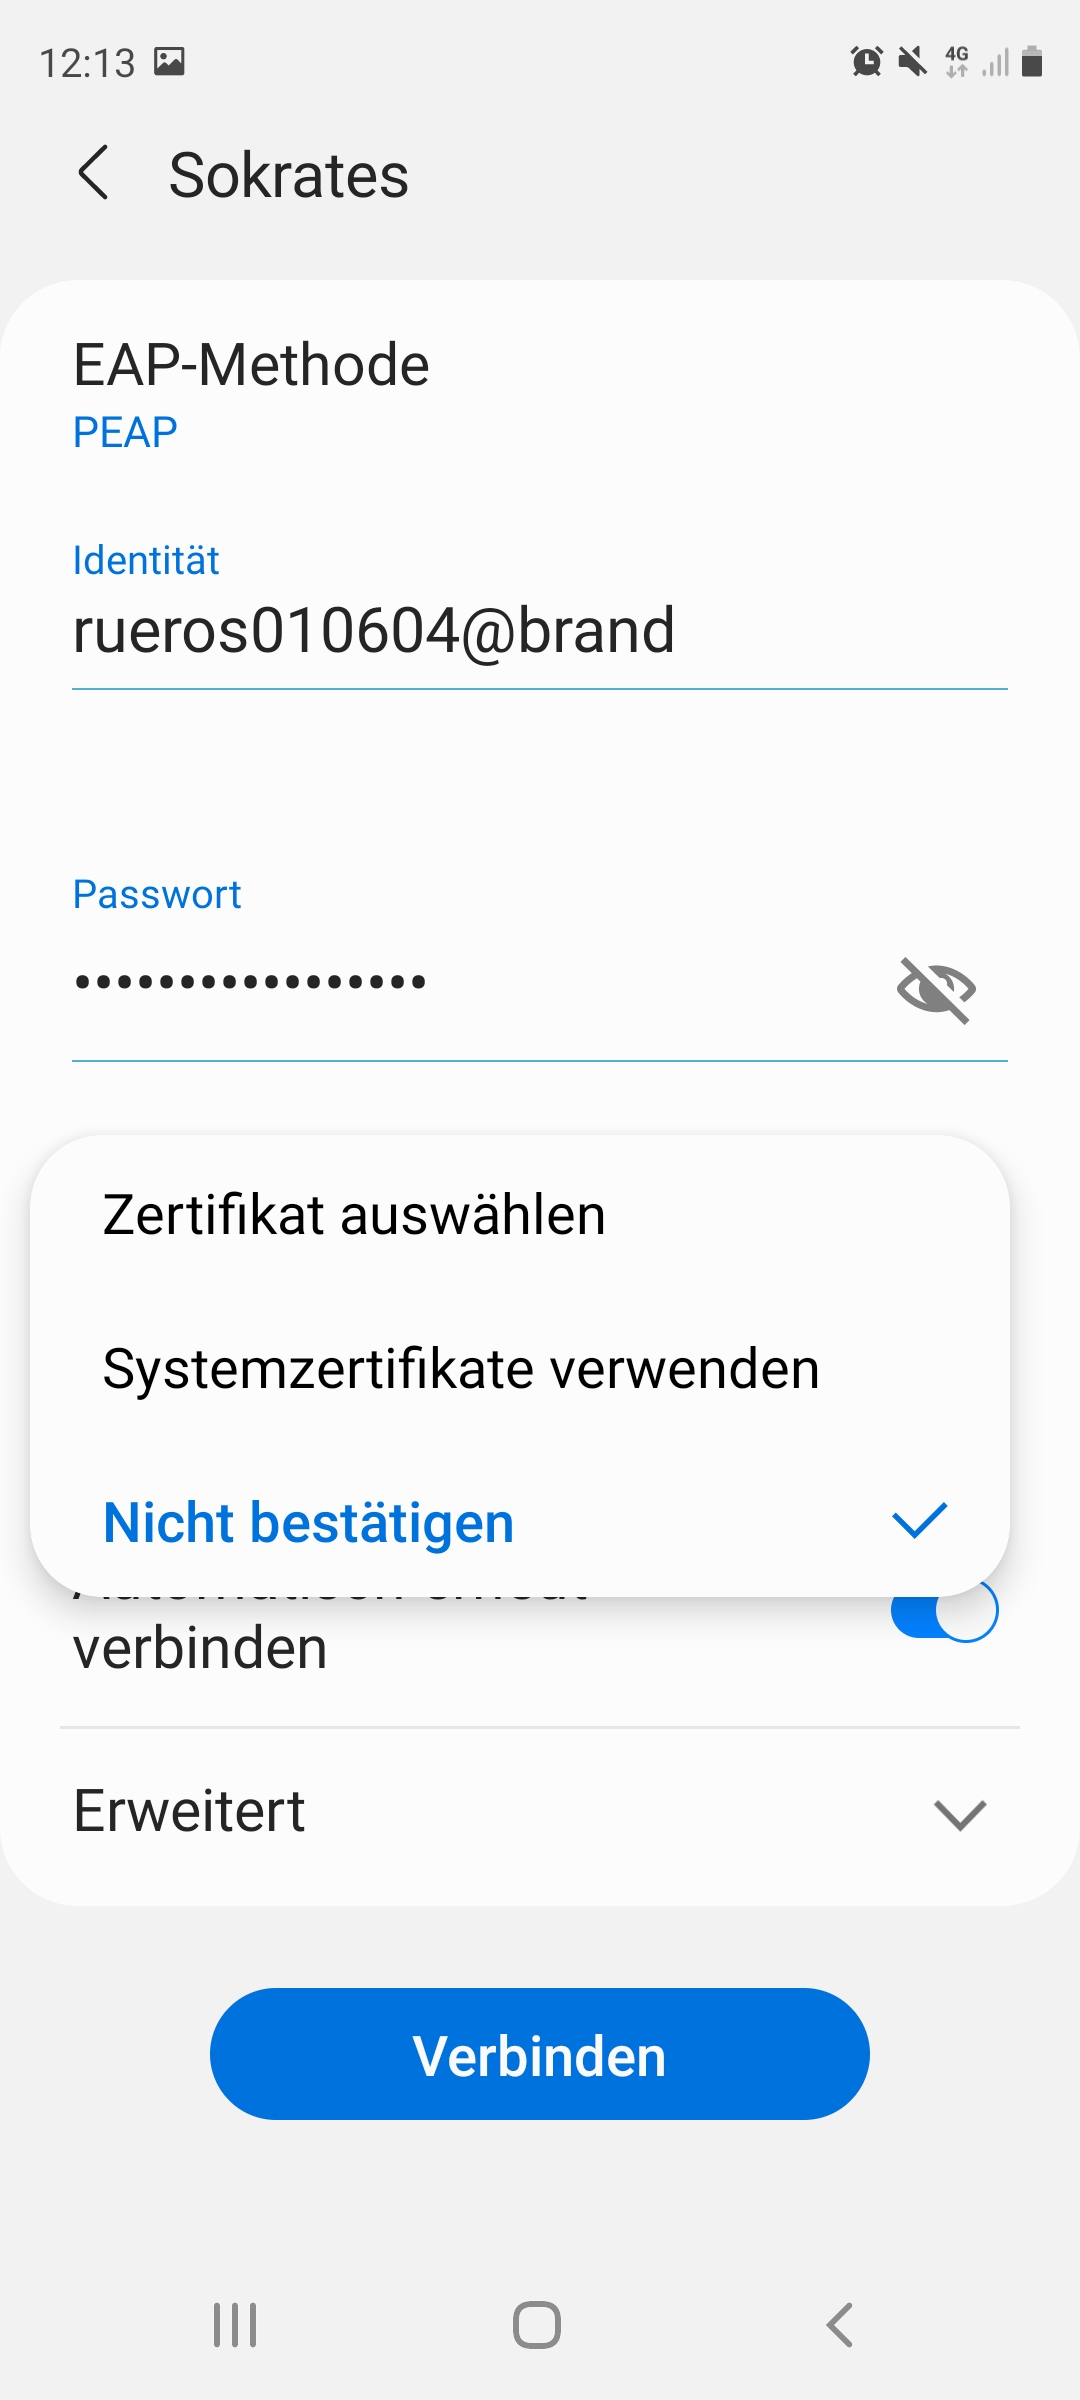 Wlan einrichten Android - Schritt 4 - Zertifikat nicht validieren